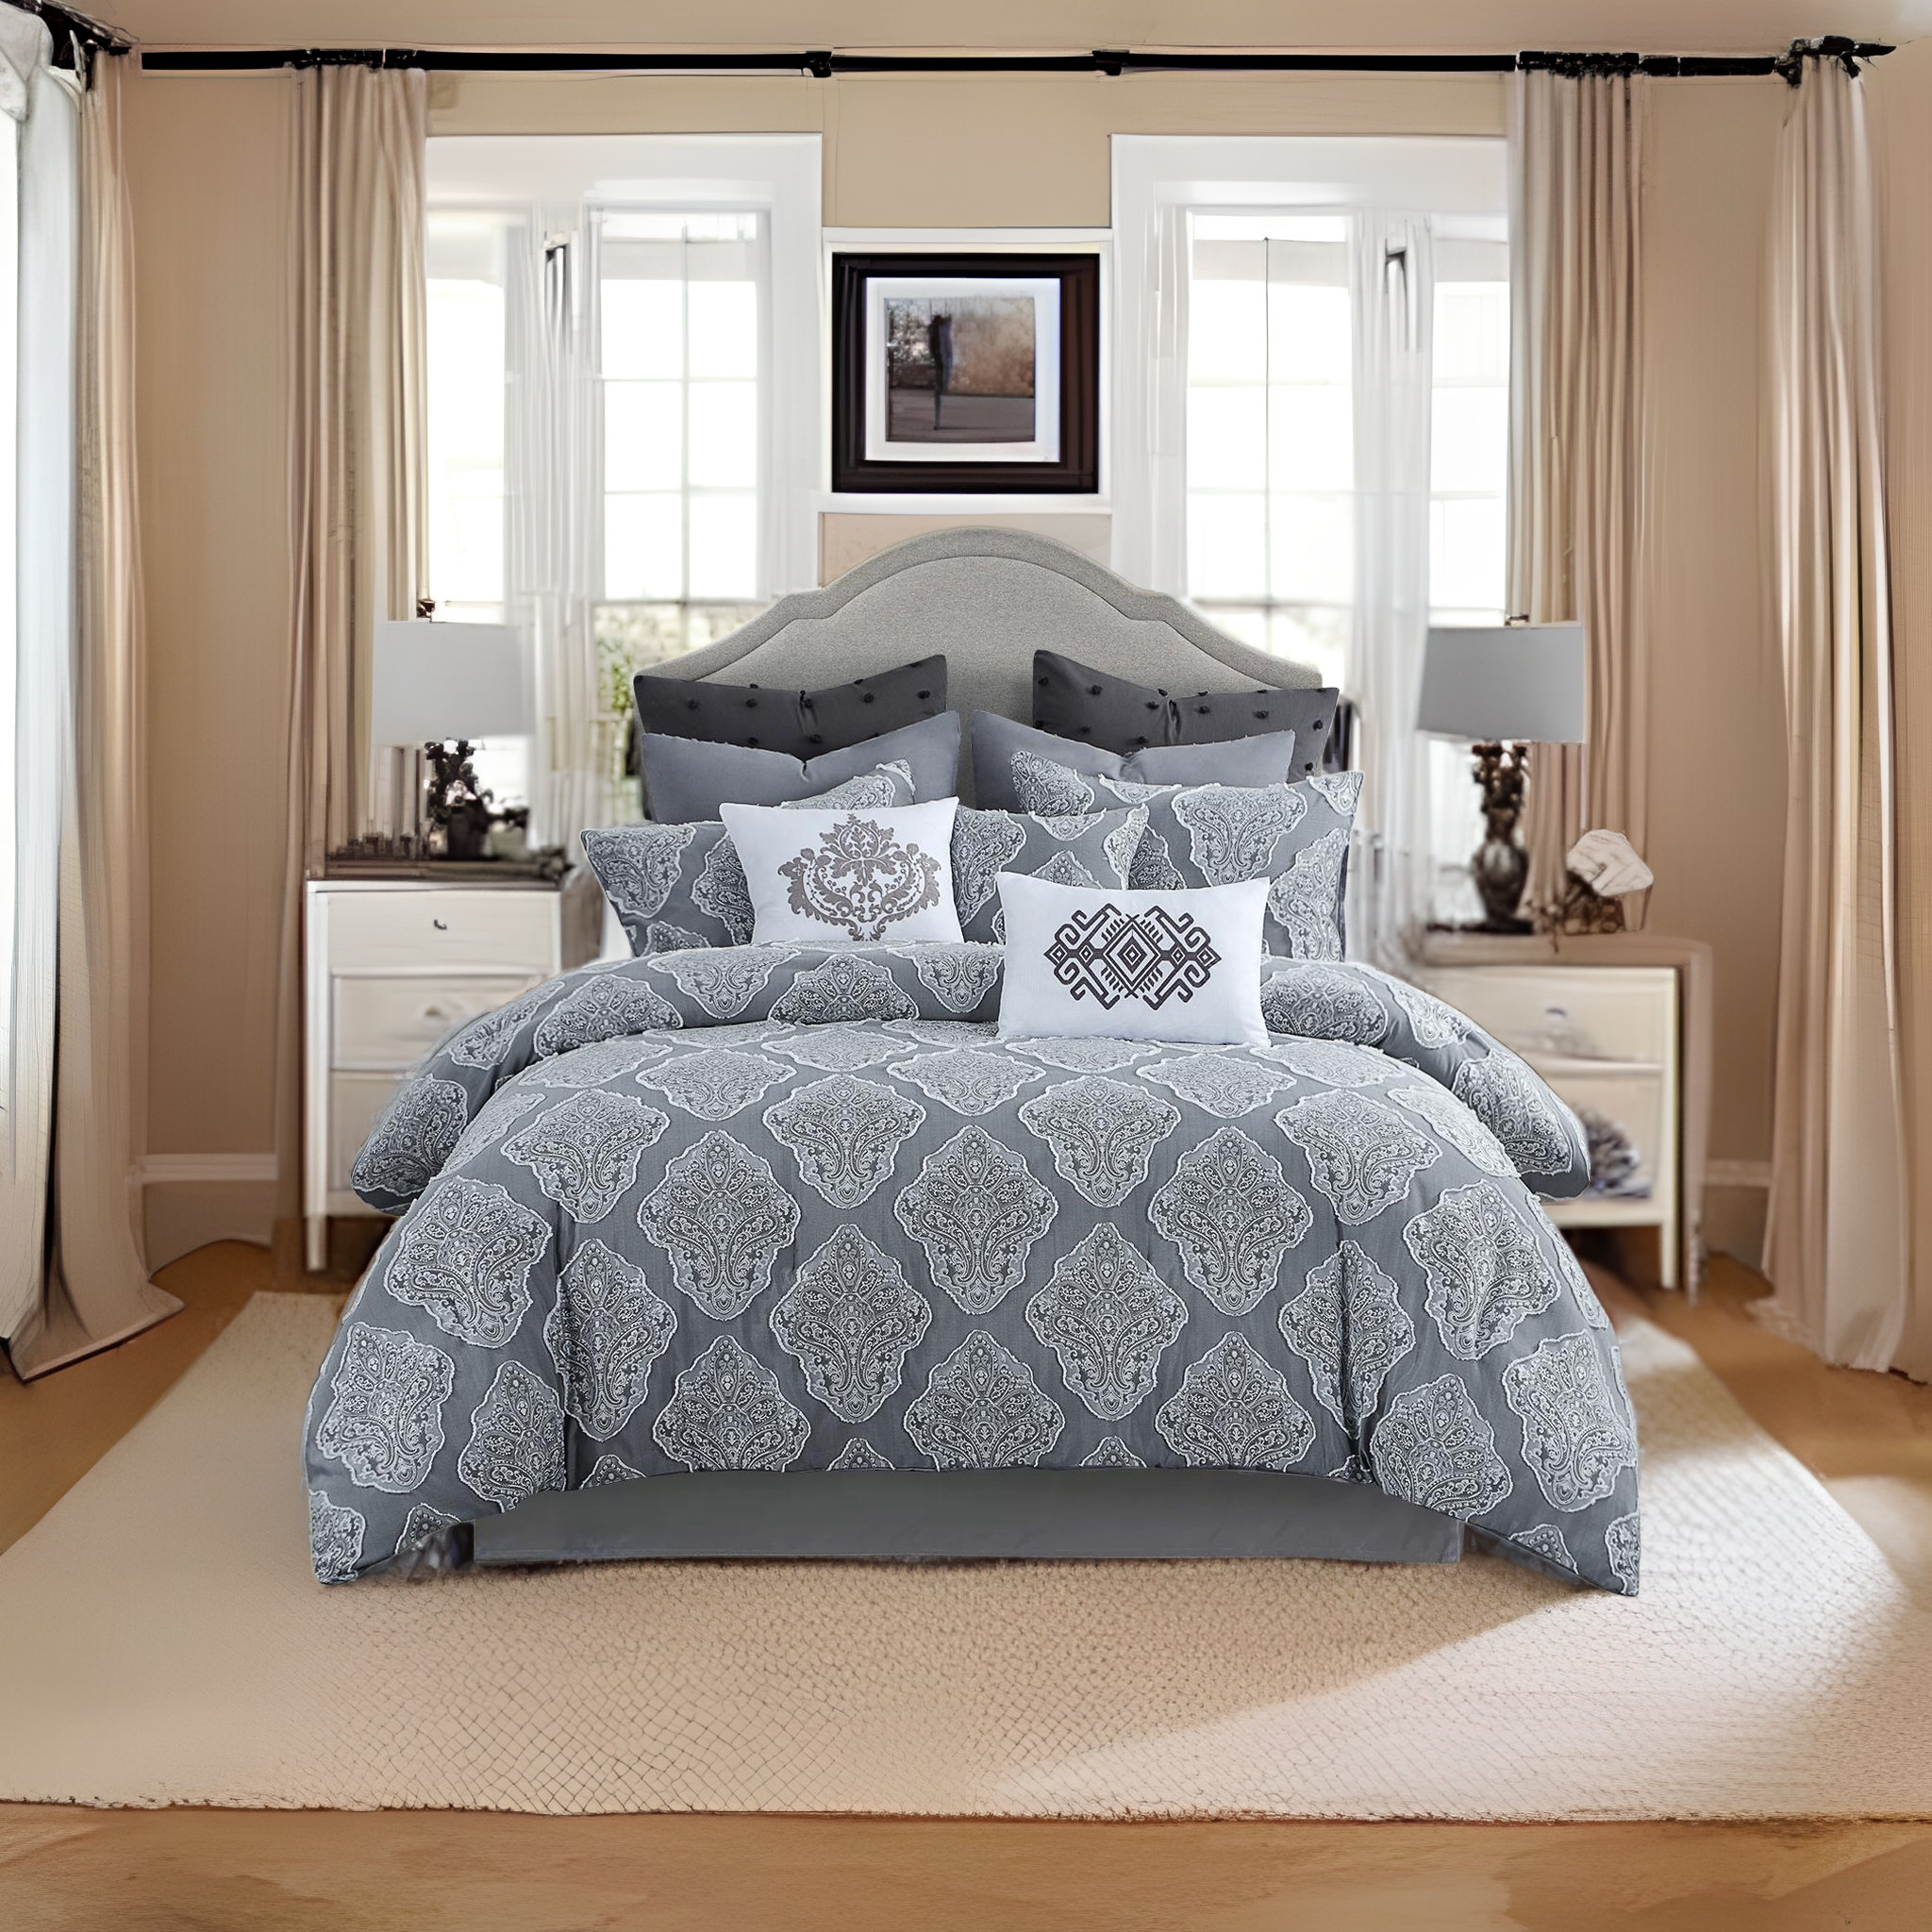 https://assets.wfcdn.com/im/32109049/compr-r85/2394/239472927/ludvik-microfiber-tufted-jacquard-traditional-damask-comforter-set.jpg